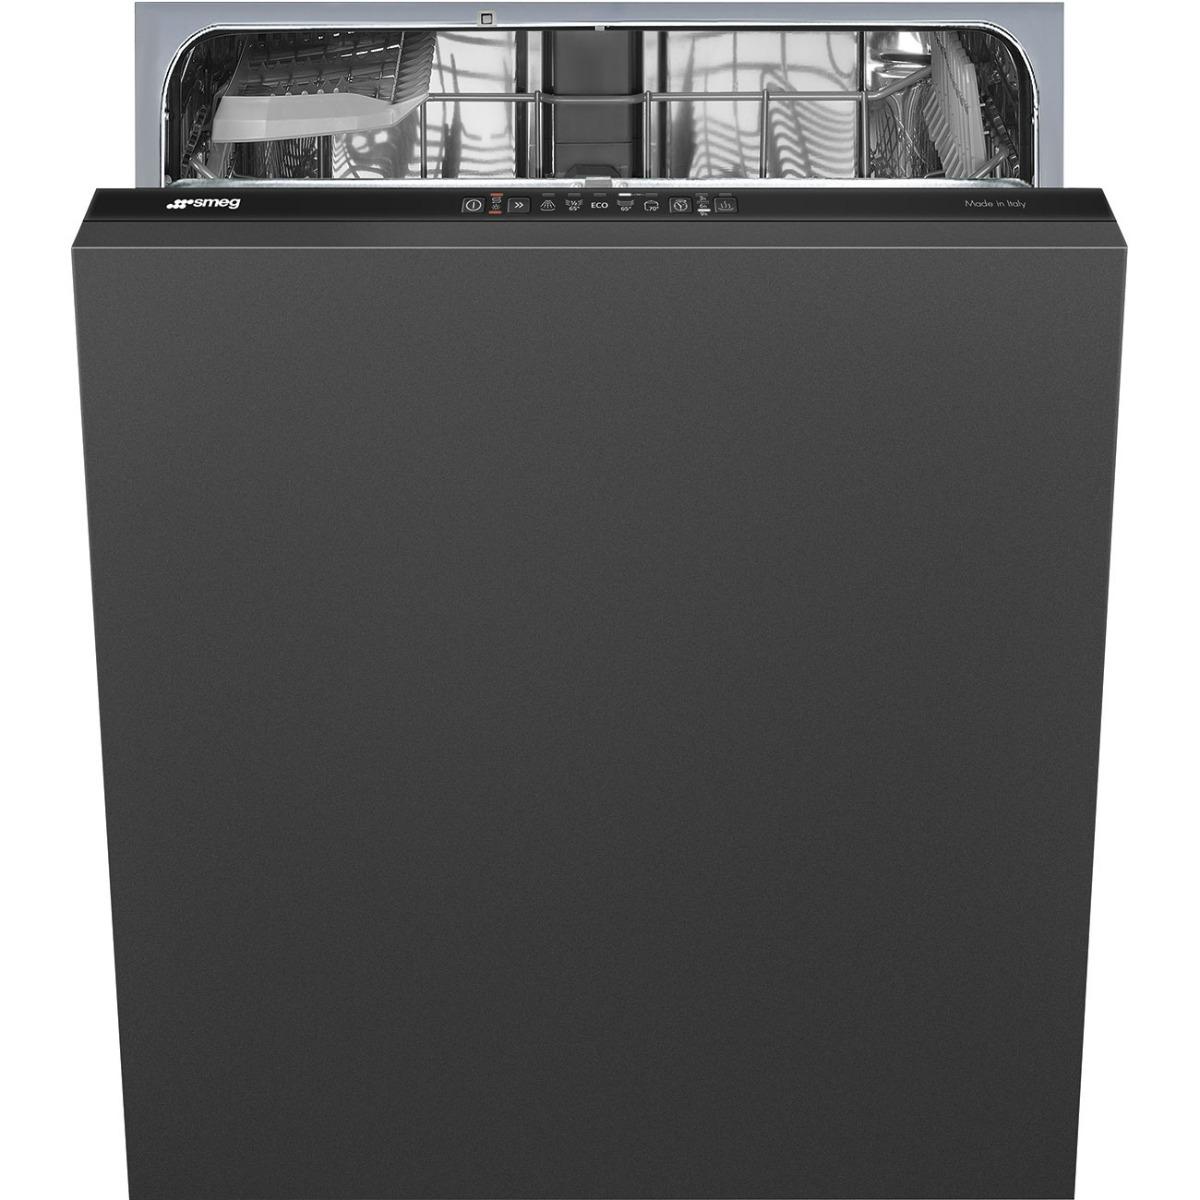 غسالة المواعين بلت ان 12 لتر 60 سم سميج Smeg Built In Dishwasher Fully Integrated